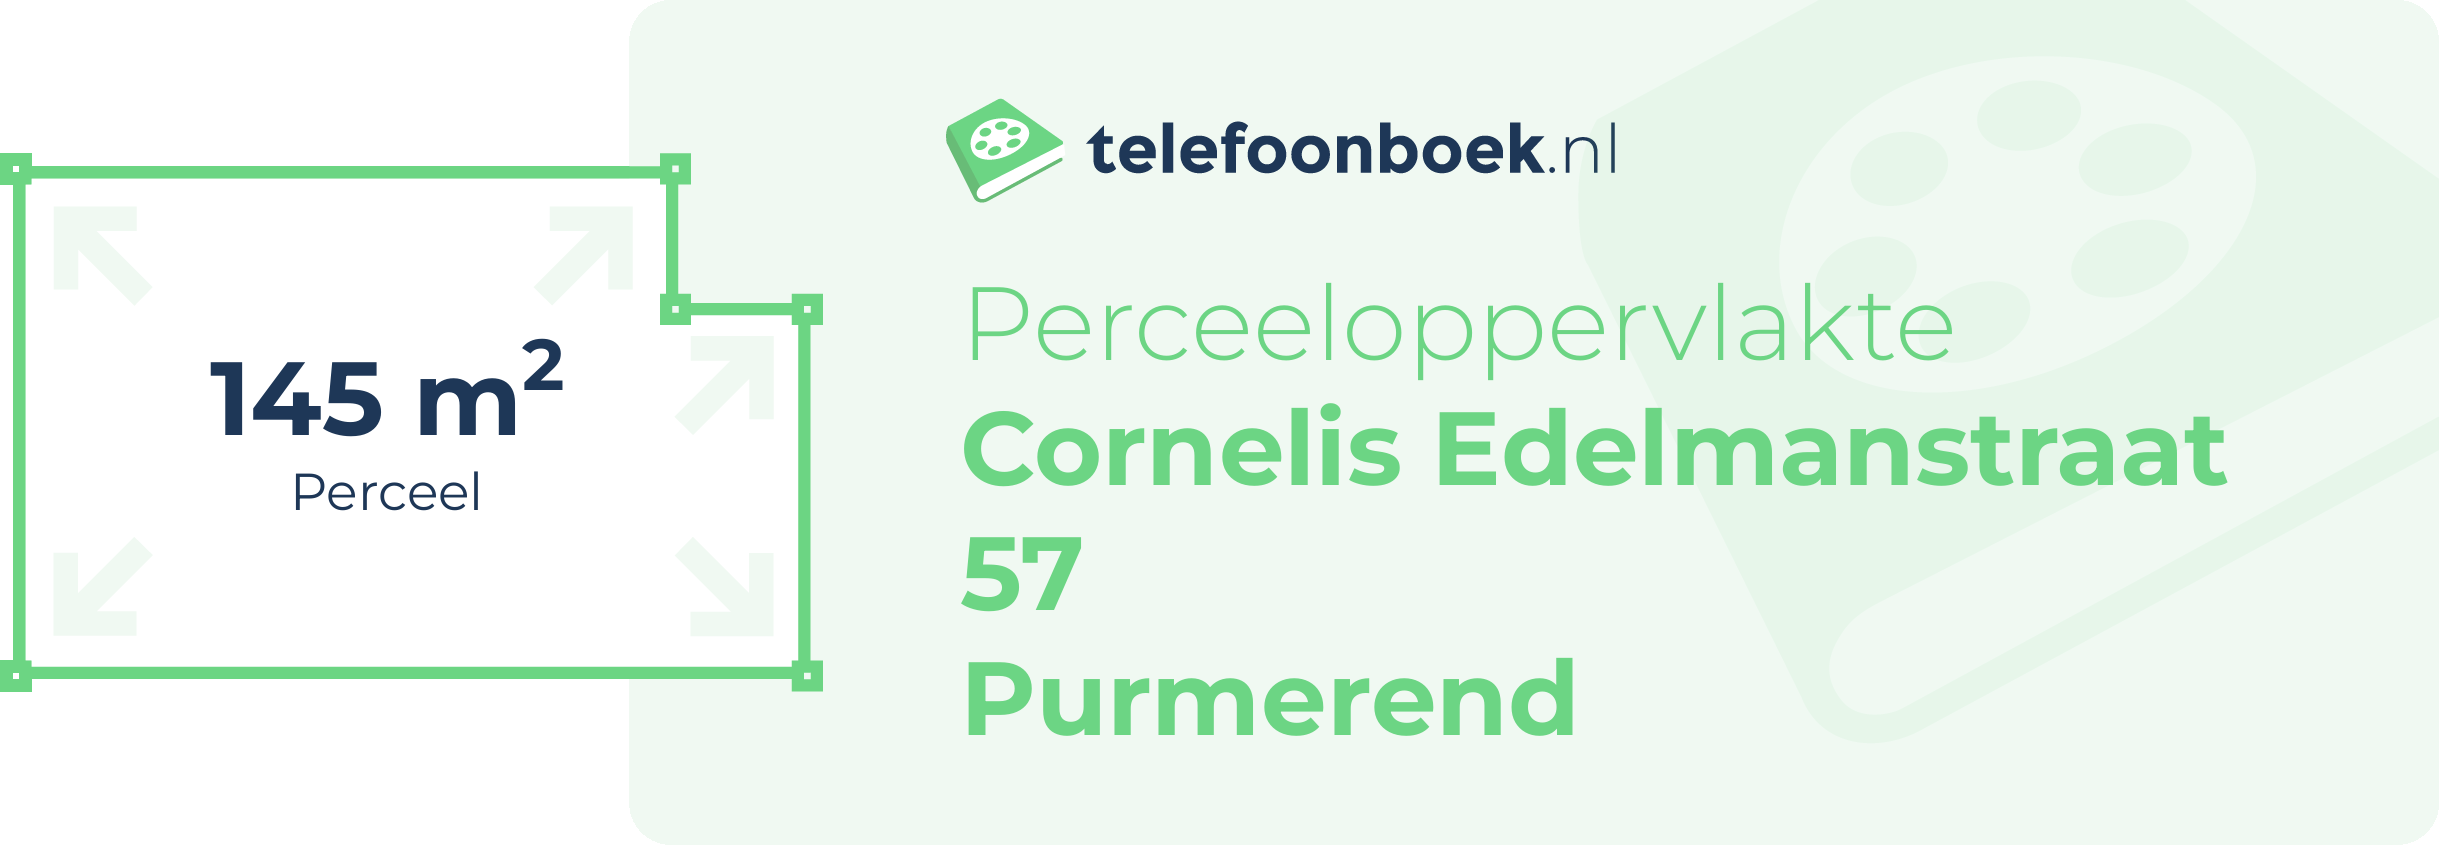 Perceeloppervlakte Cornelis Edelmanstraat 57 Purmerend